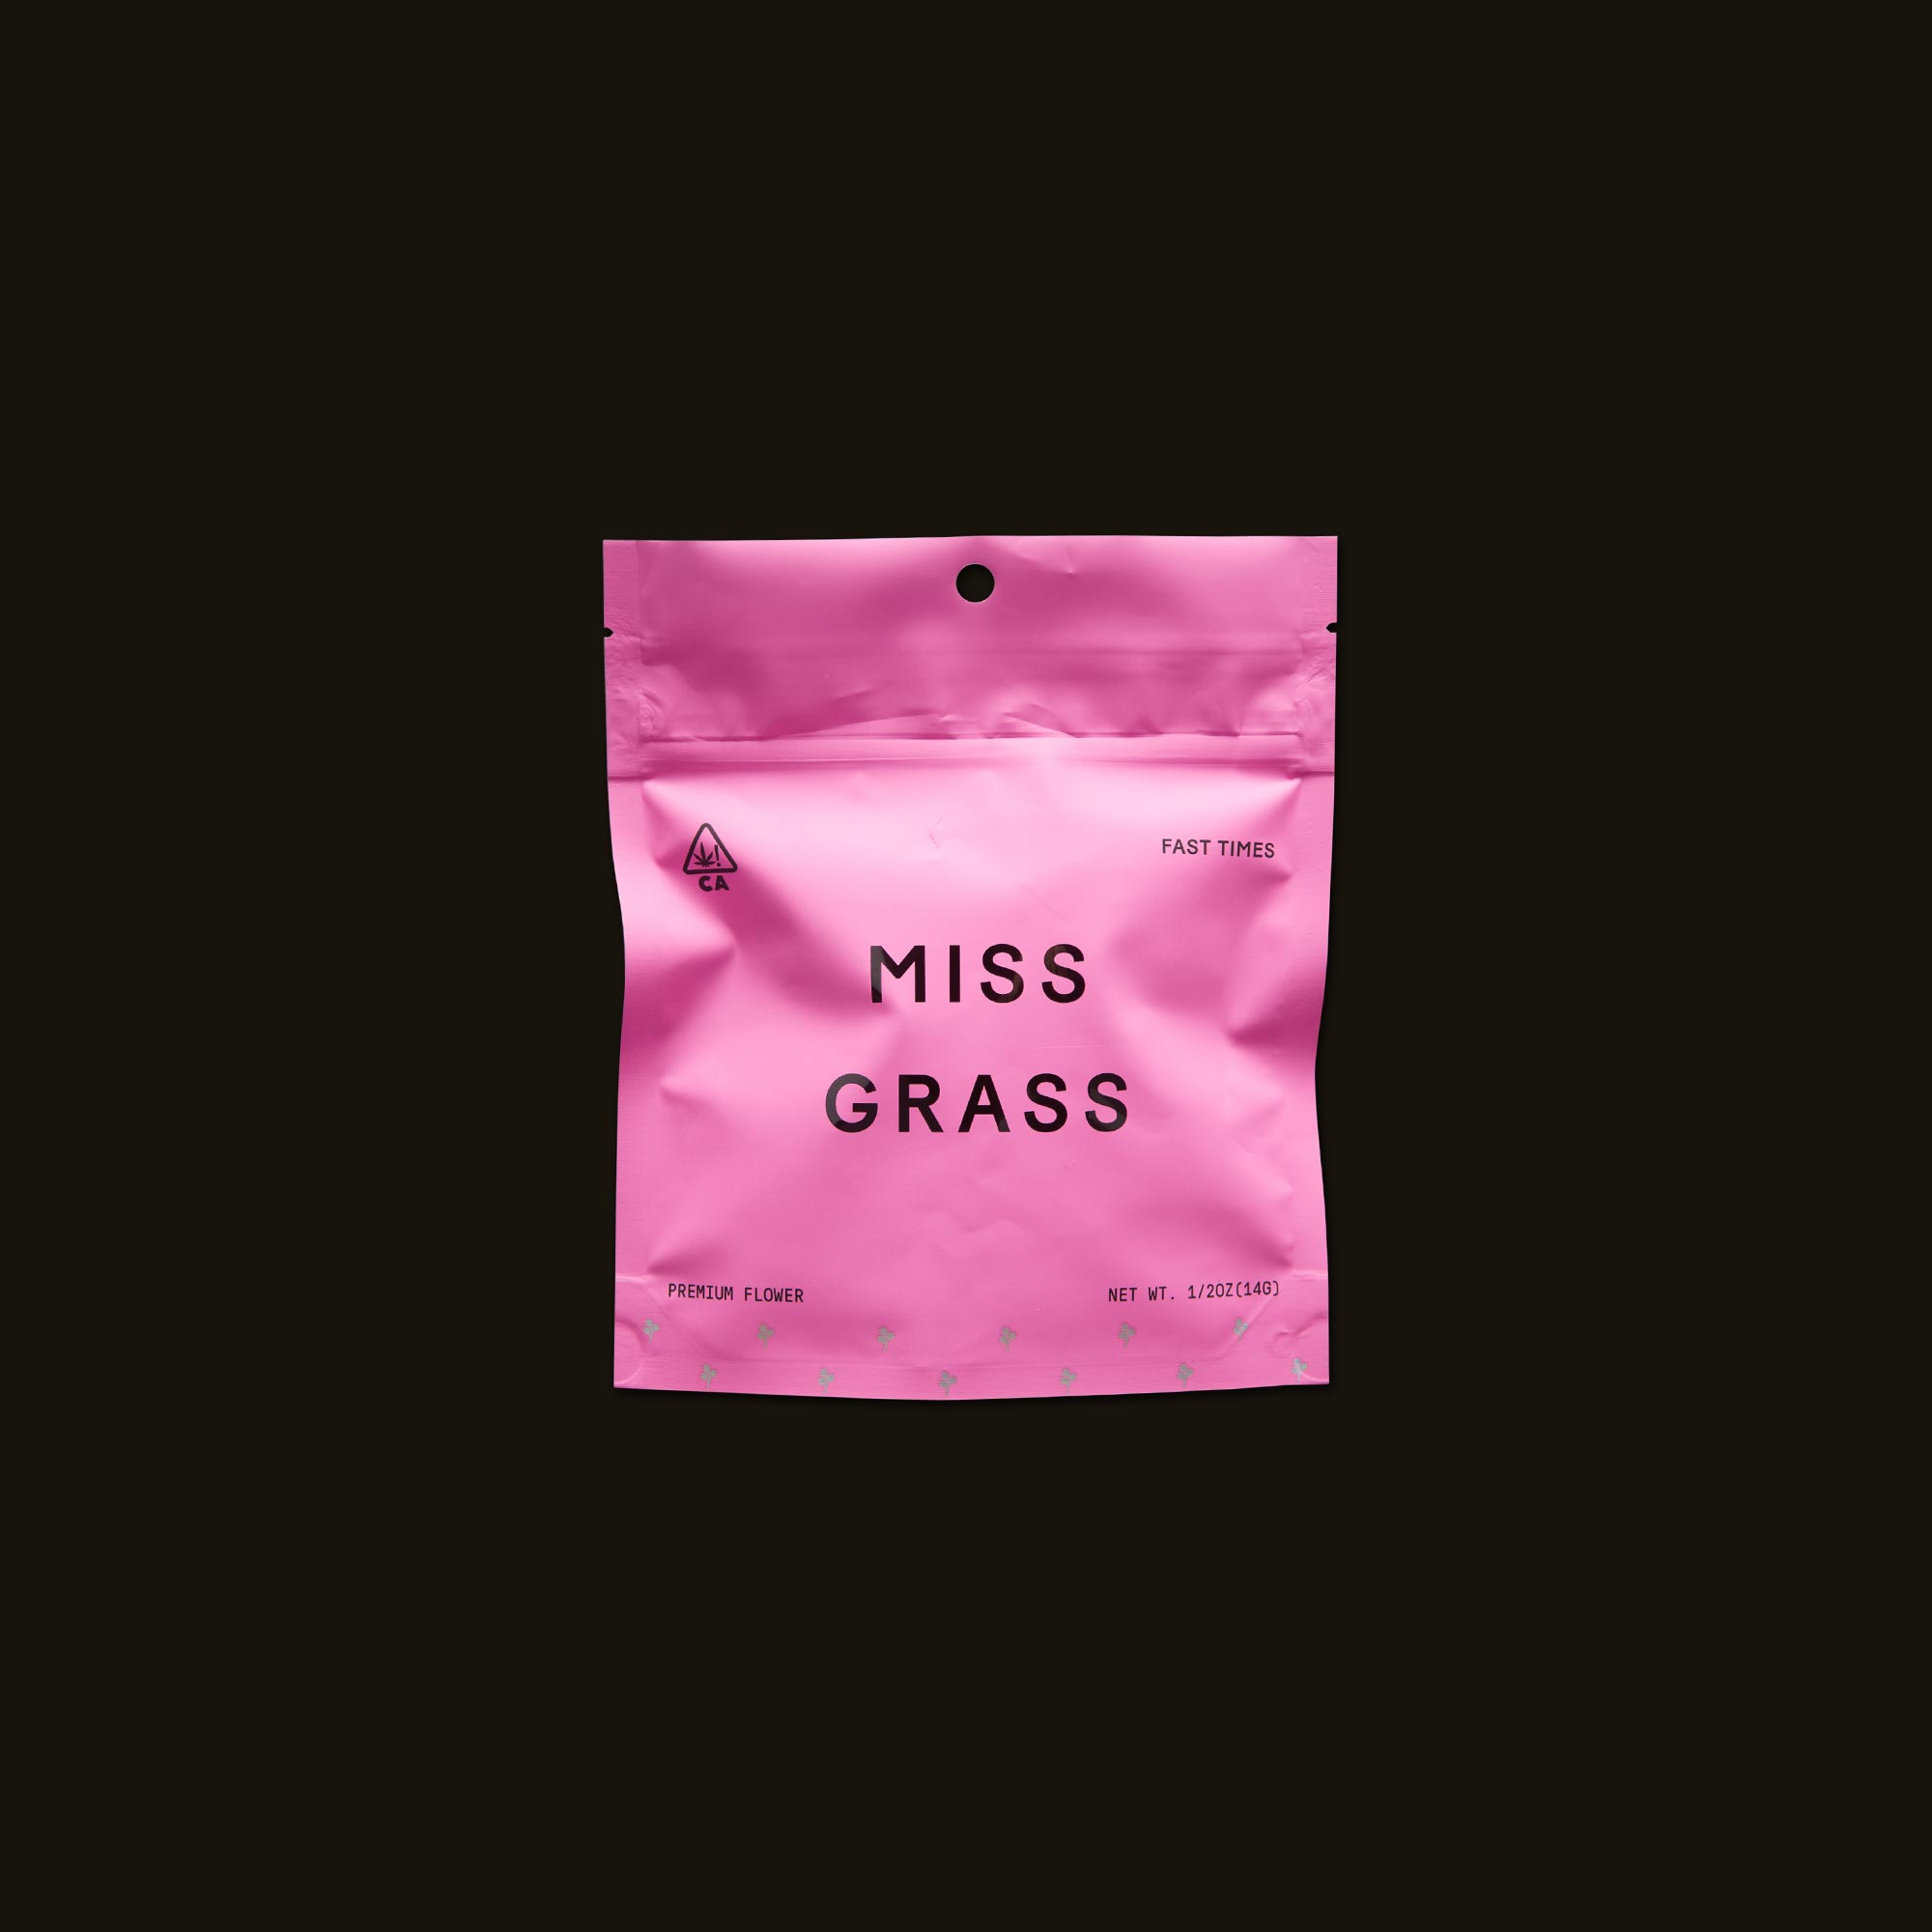 Miss-Grass-Fast-Times17-2047993